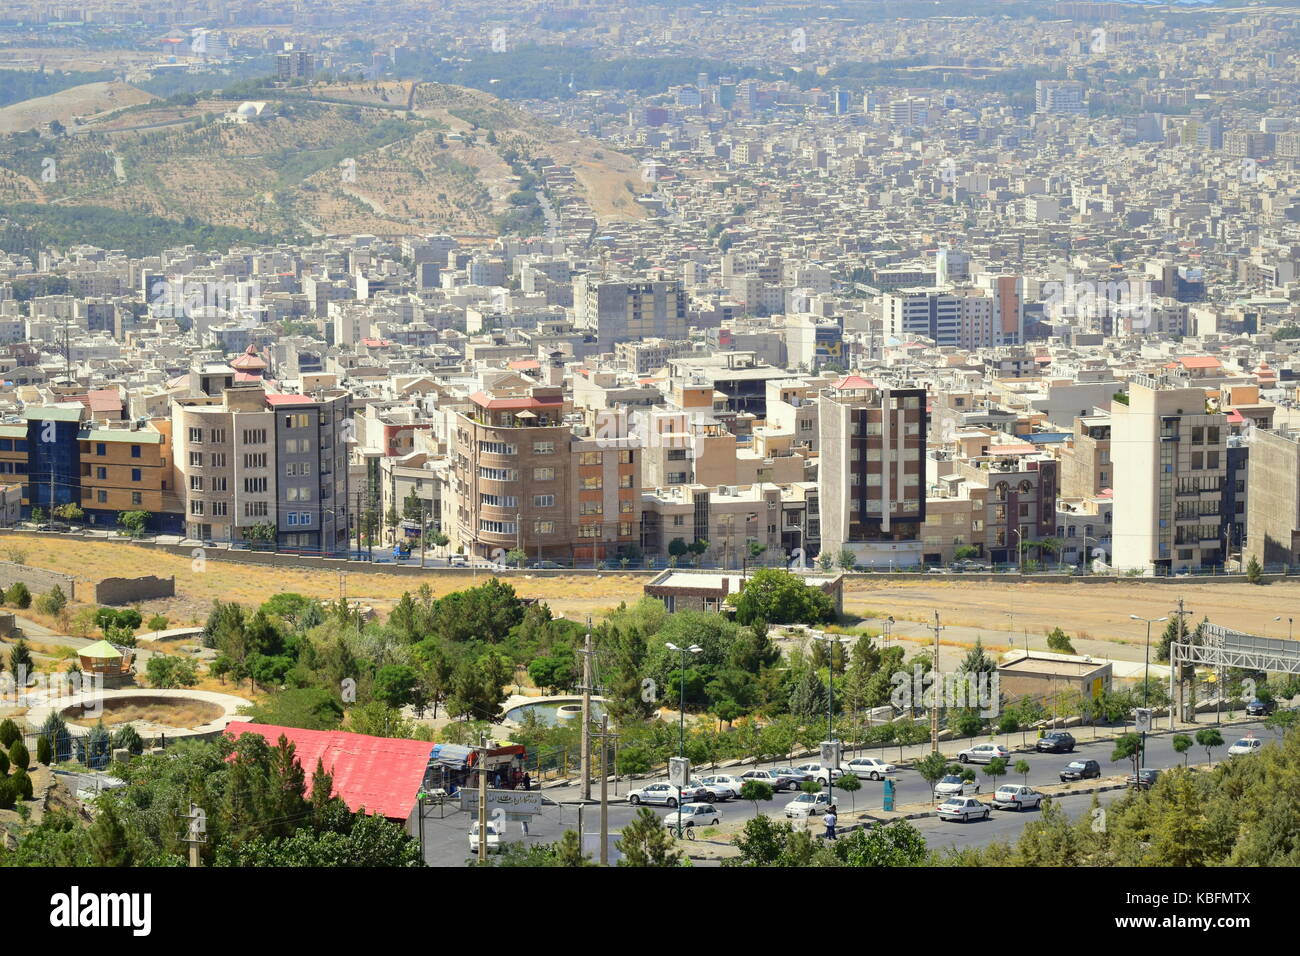 Iran neue Wohnviertel in den Randgebieten der Stadt steigen, als Reaktion auf die Entwicklung der Immobilien Nachfrage und Bevölkerungswachstum Stockfoto